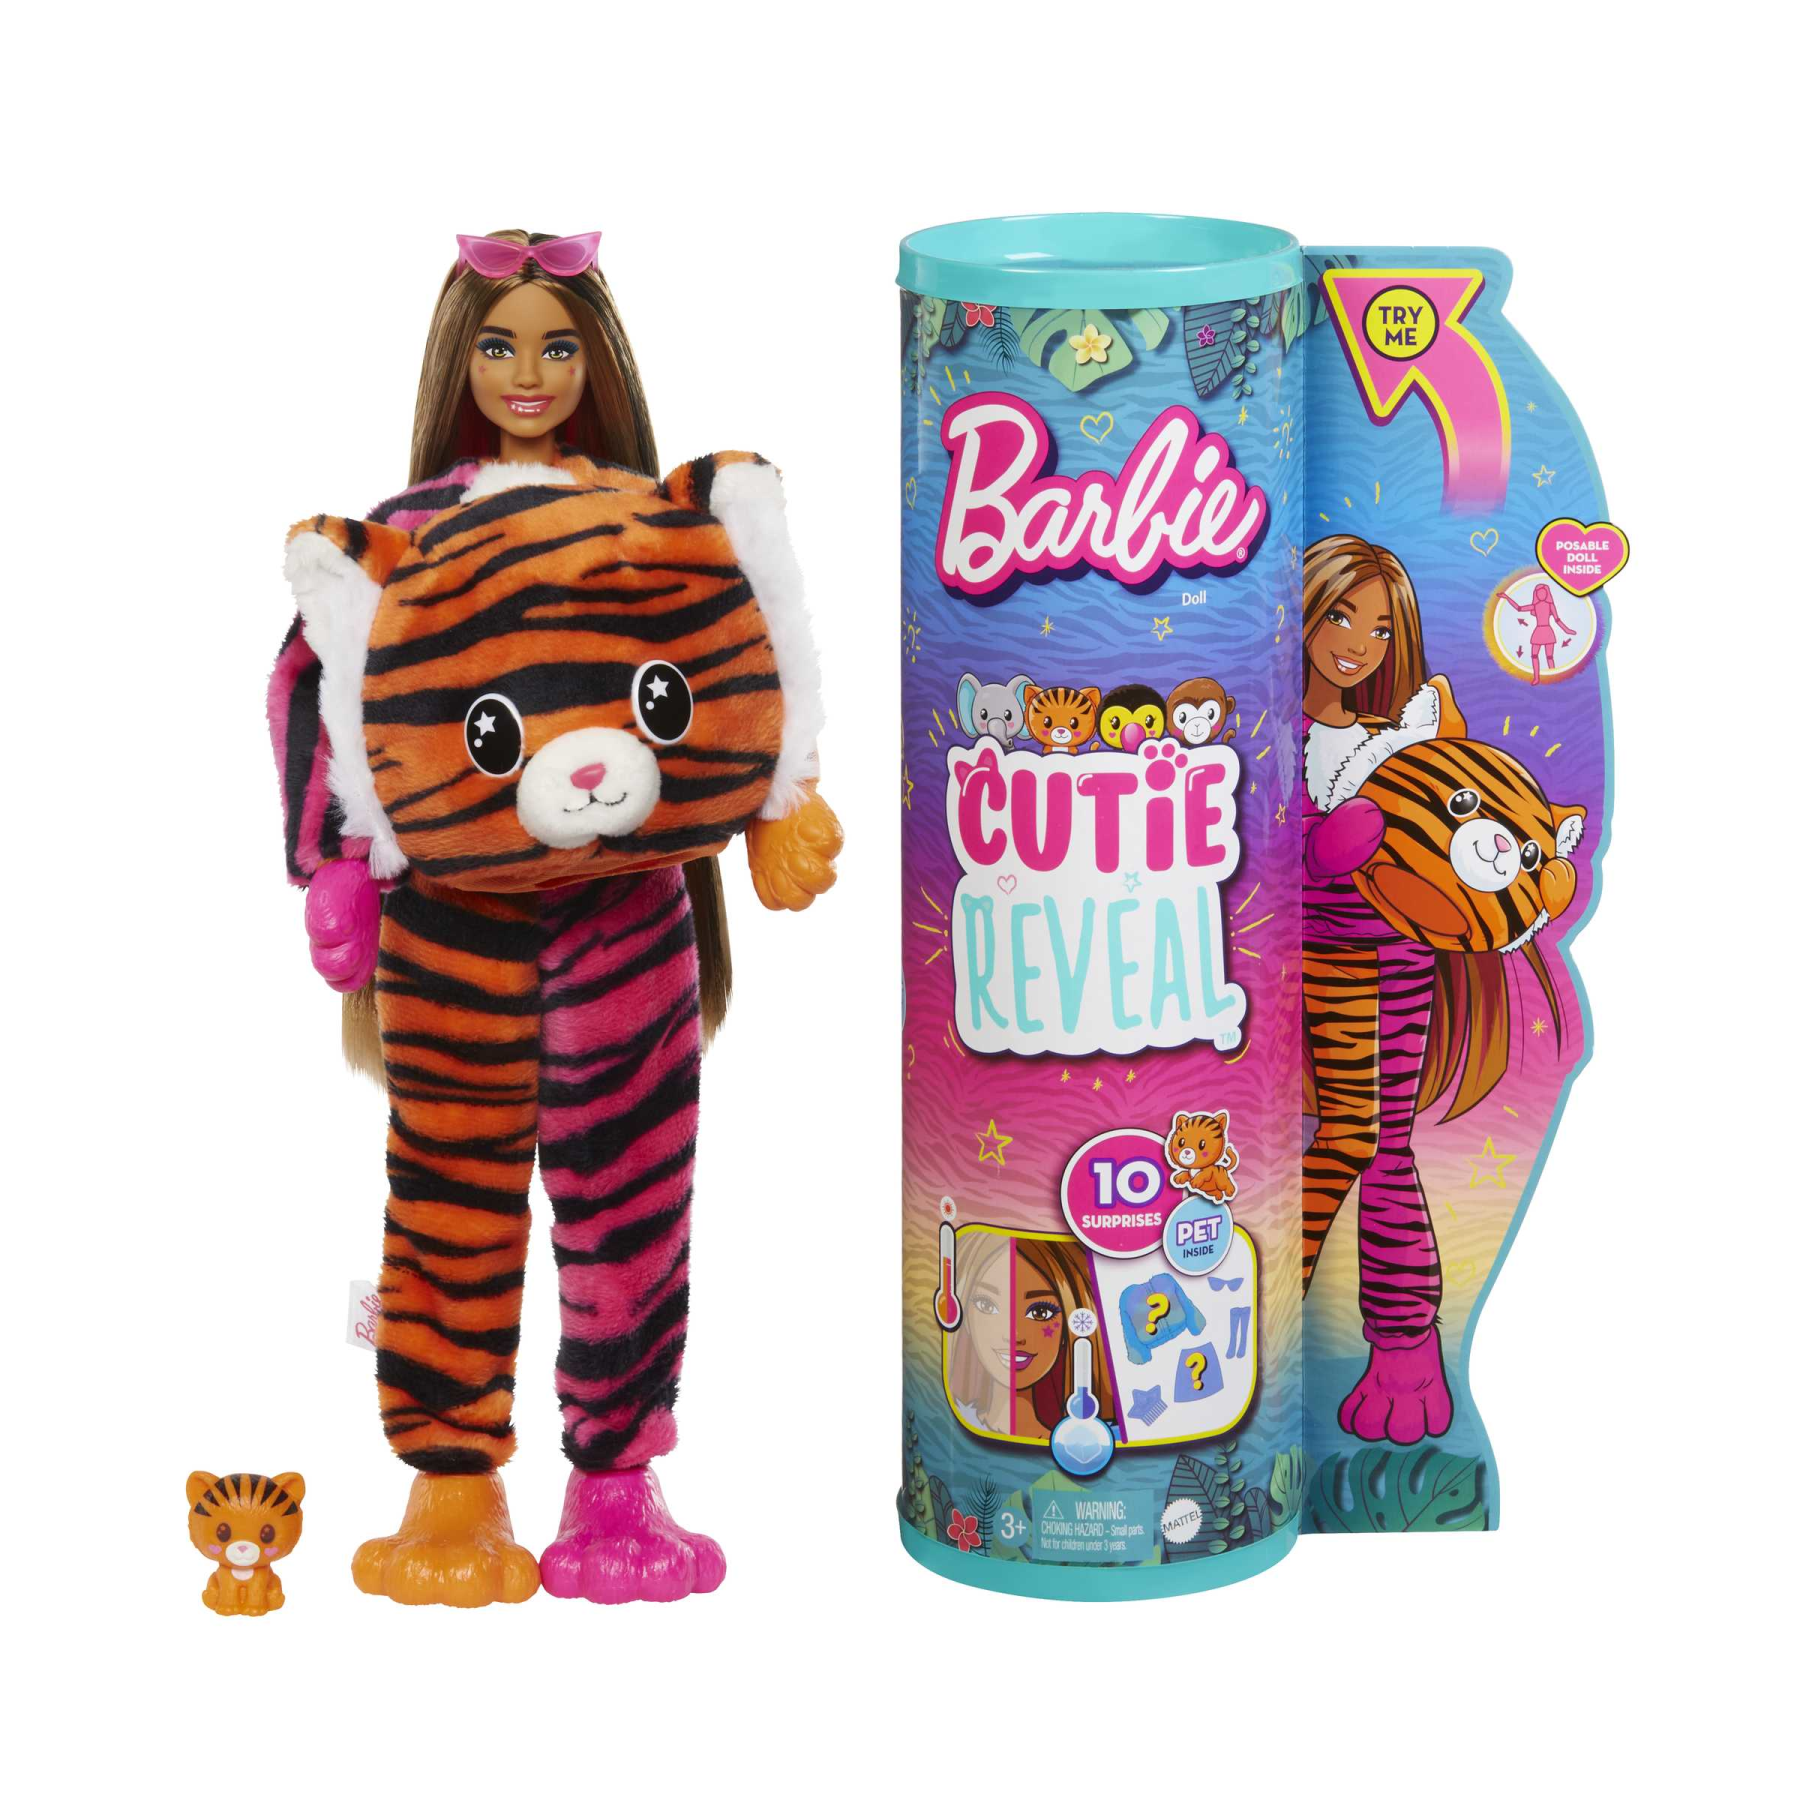 Barbie - barbie cutie reveal tigre, serie amici della giungla, bambola con  costume da tigre di peluche e 10 sorprese con tecnologia cambia colore,  giocattolo per bambini, 3+ anni, hkp99 - Toys Center